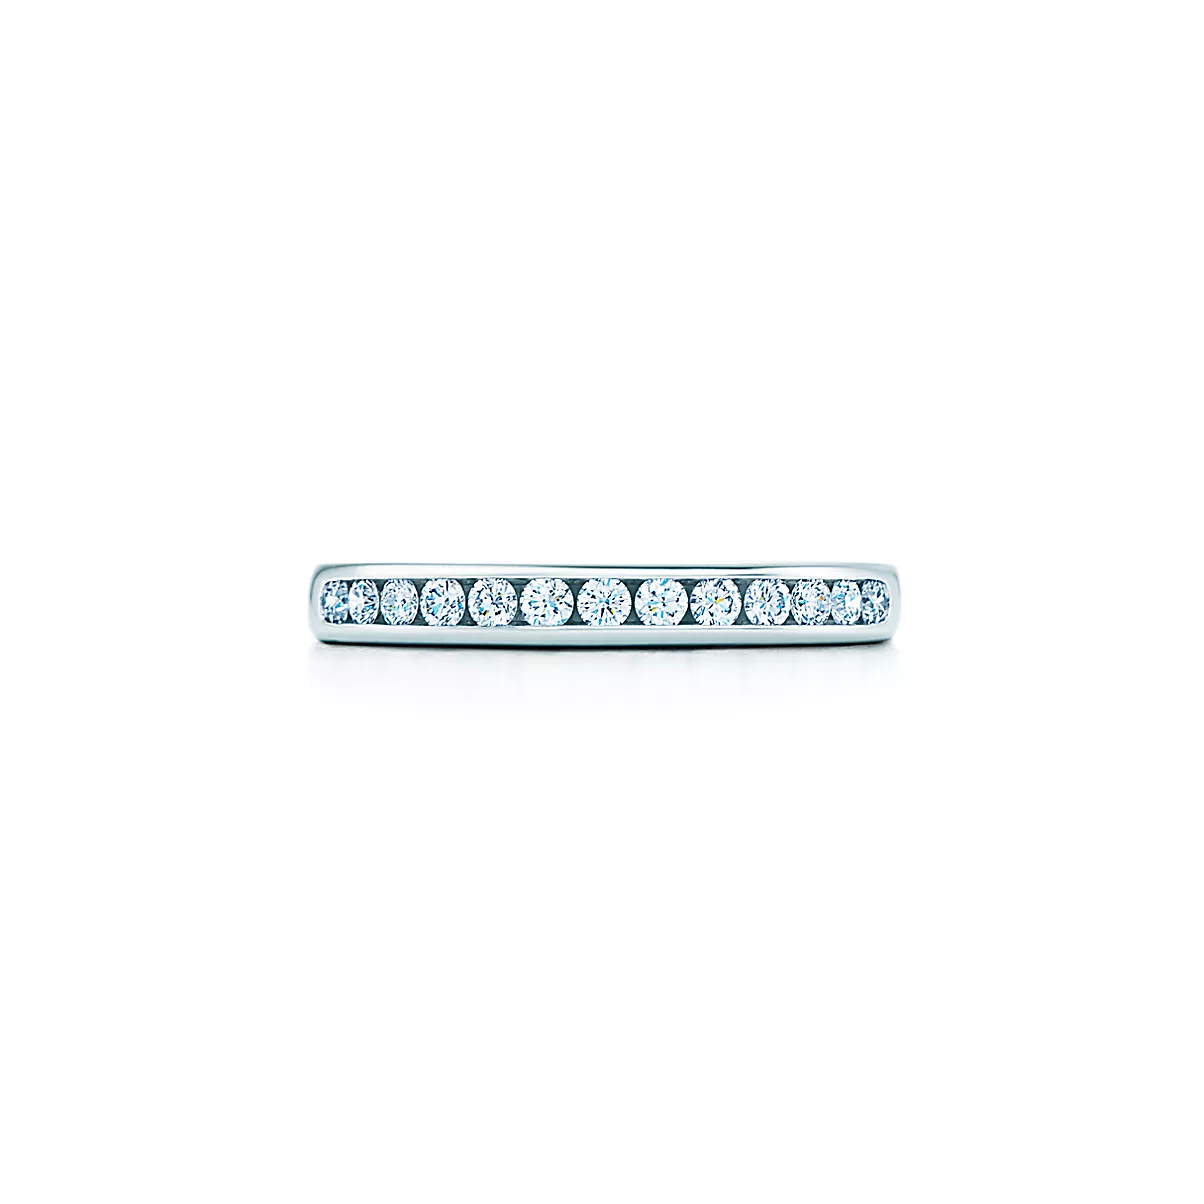 Tiffany Diamond Wedding Band Ring 플래티늄 라운드 브릴리언트 다이아몬드